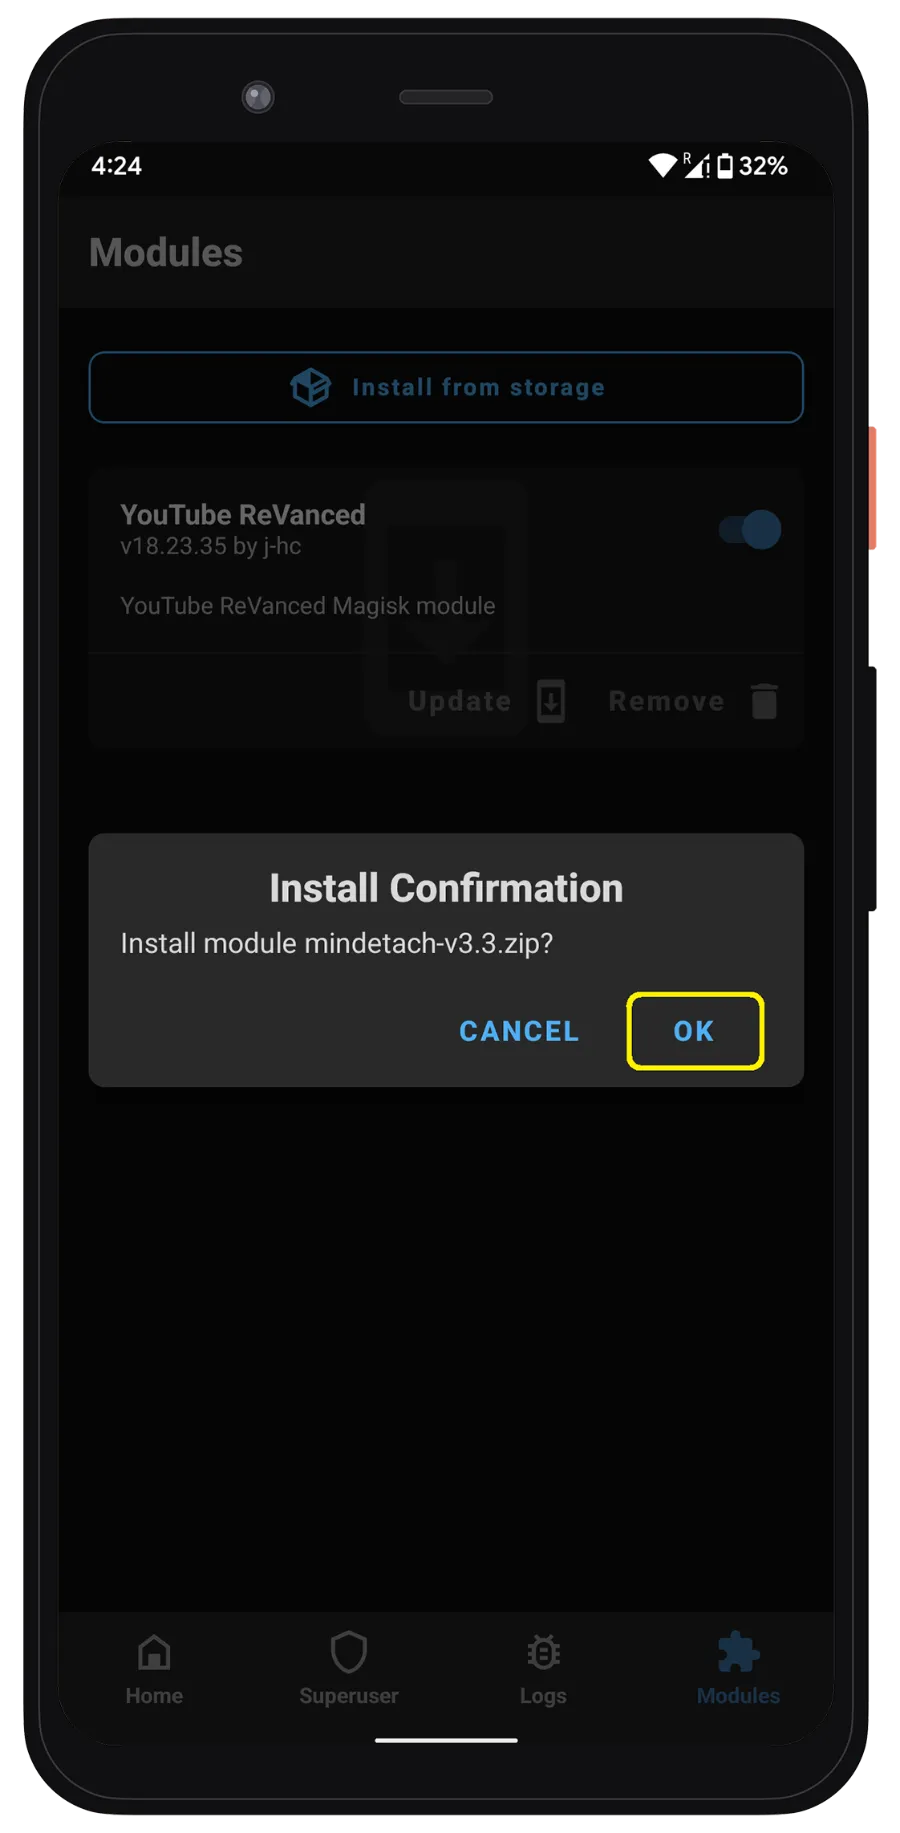 Installer le module Magisk S8 de YouTube ReVanced